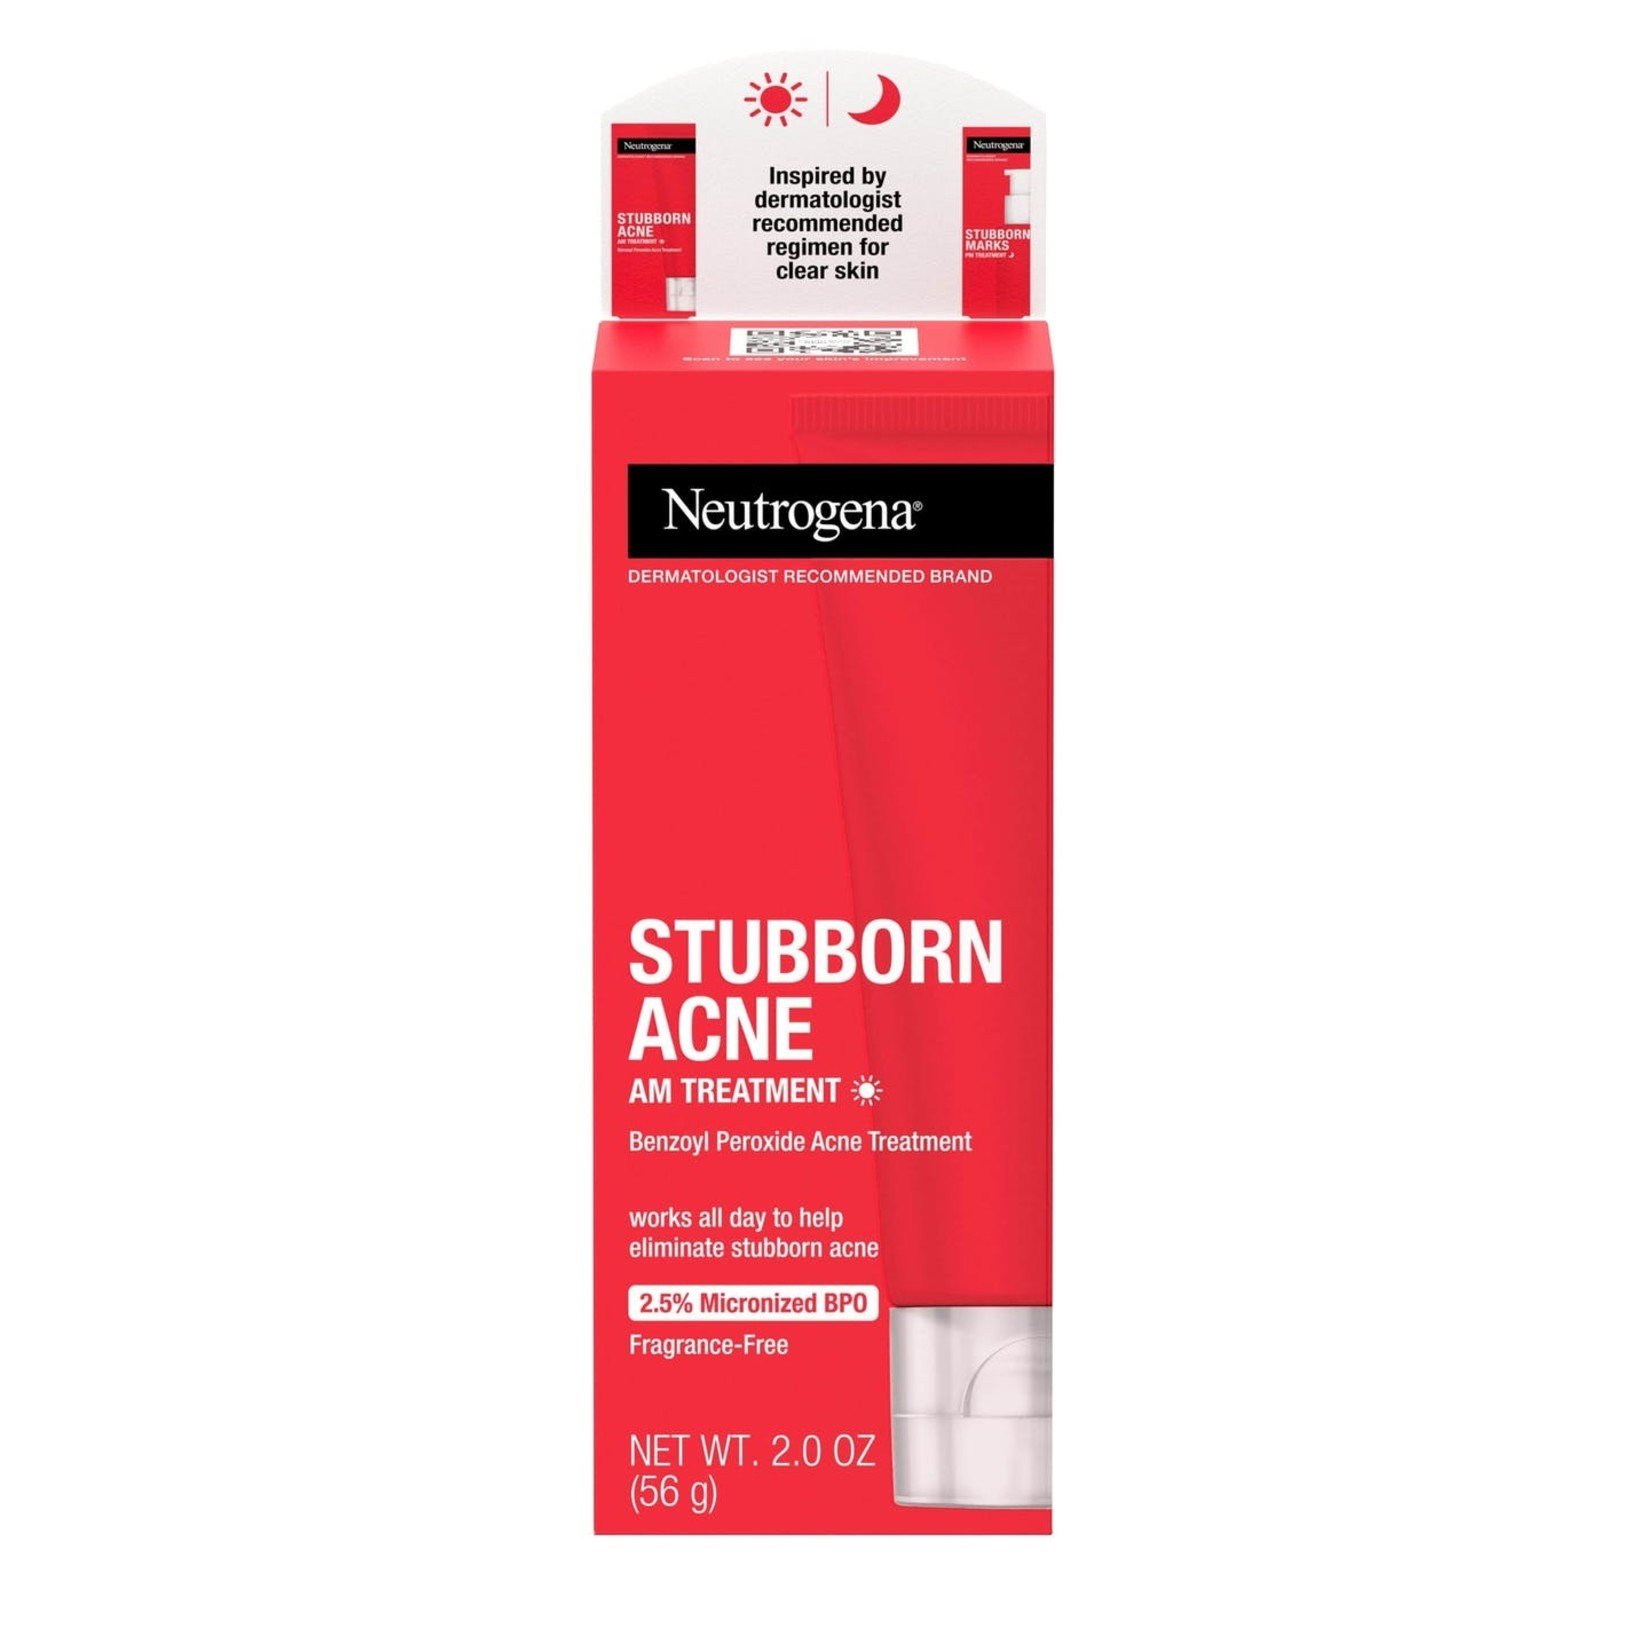 Neutrogena Stubborn Acne AM Treatment 2.5%